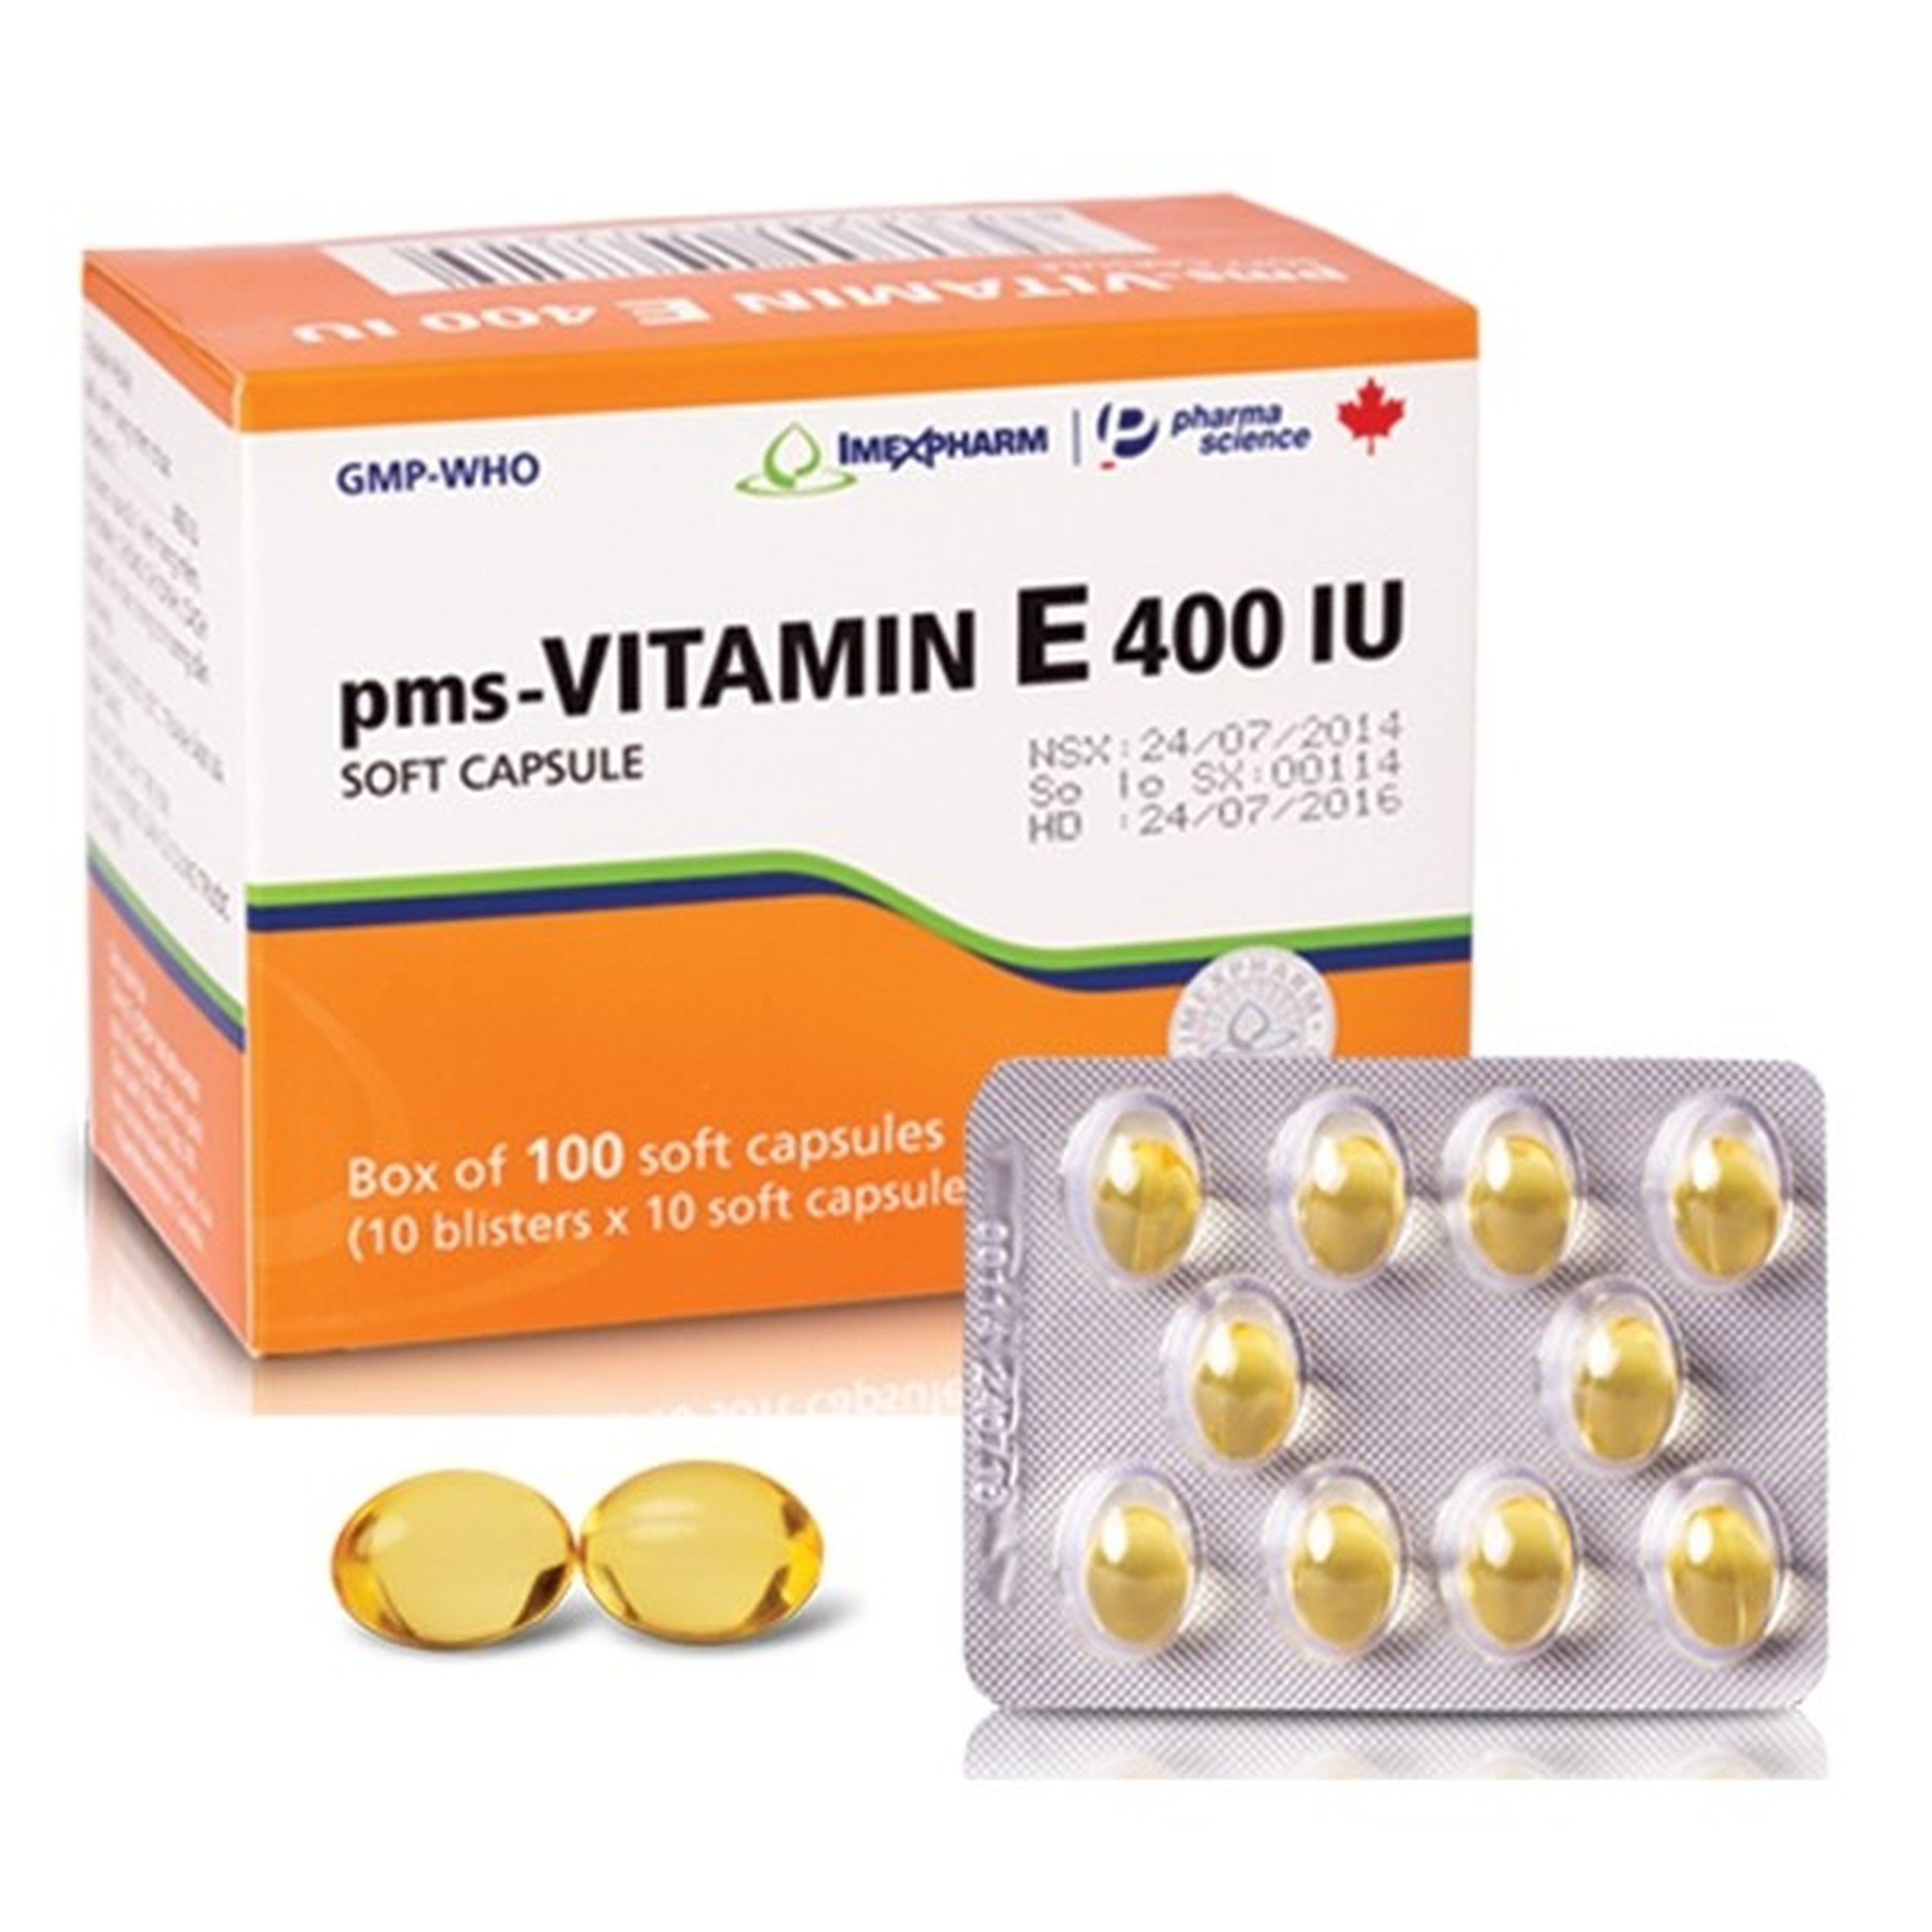 Thuốc Pms-Vitamin E 400IU Imexpharm điều trị tình trạng thiếu vitamin E (10 vỉ x 10 viên)